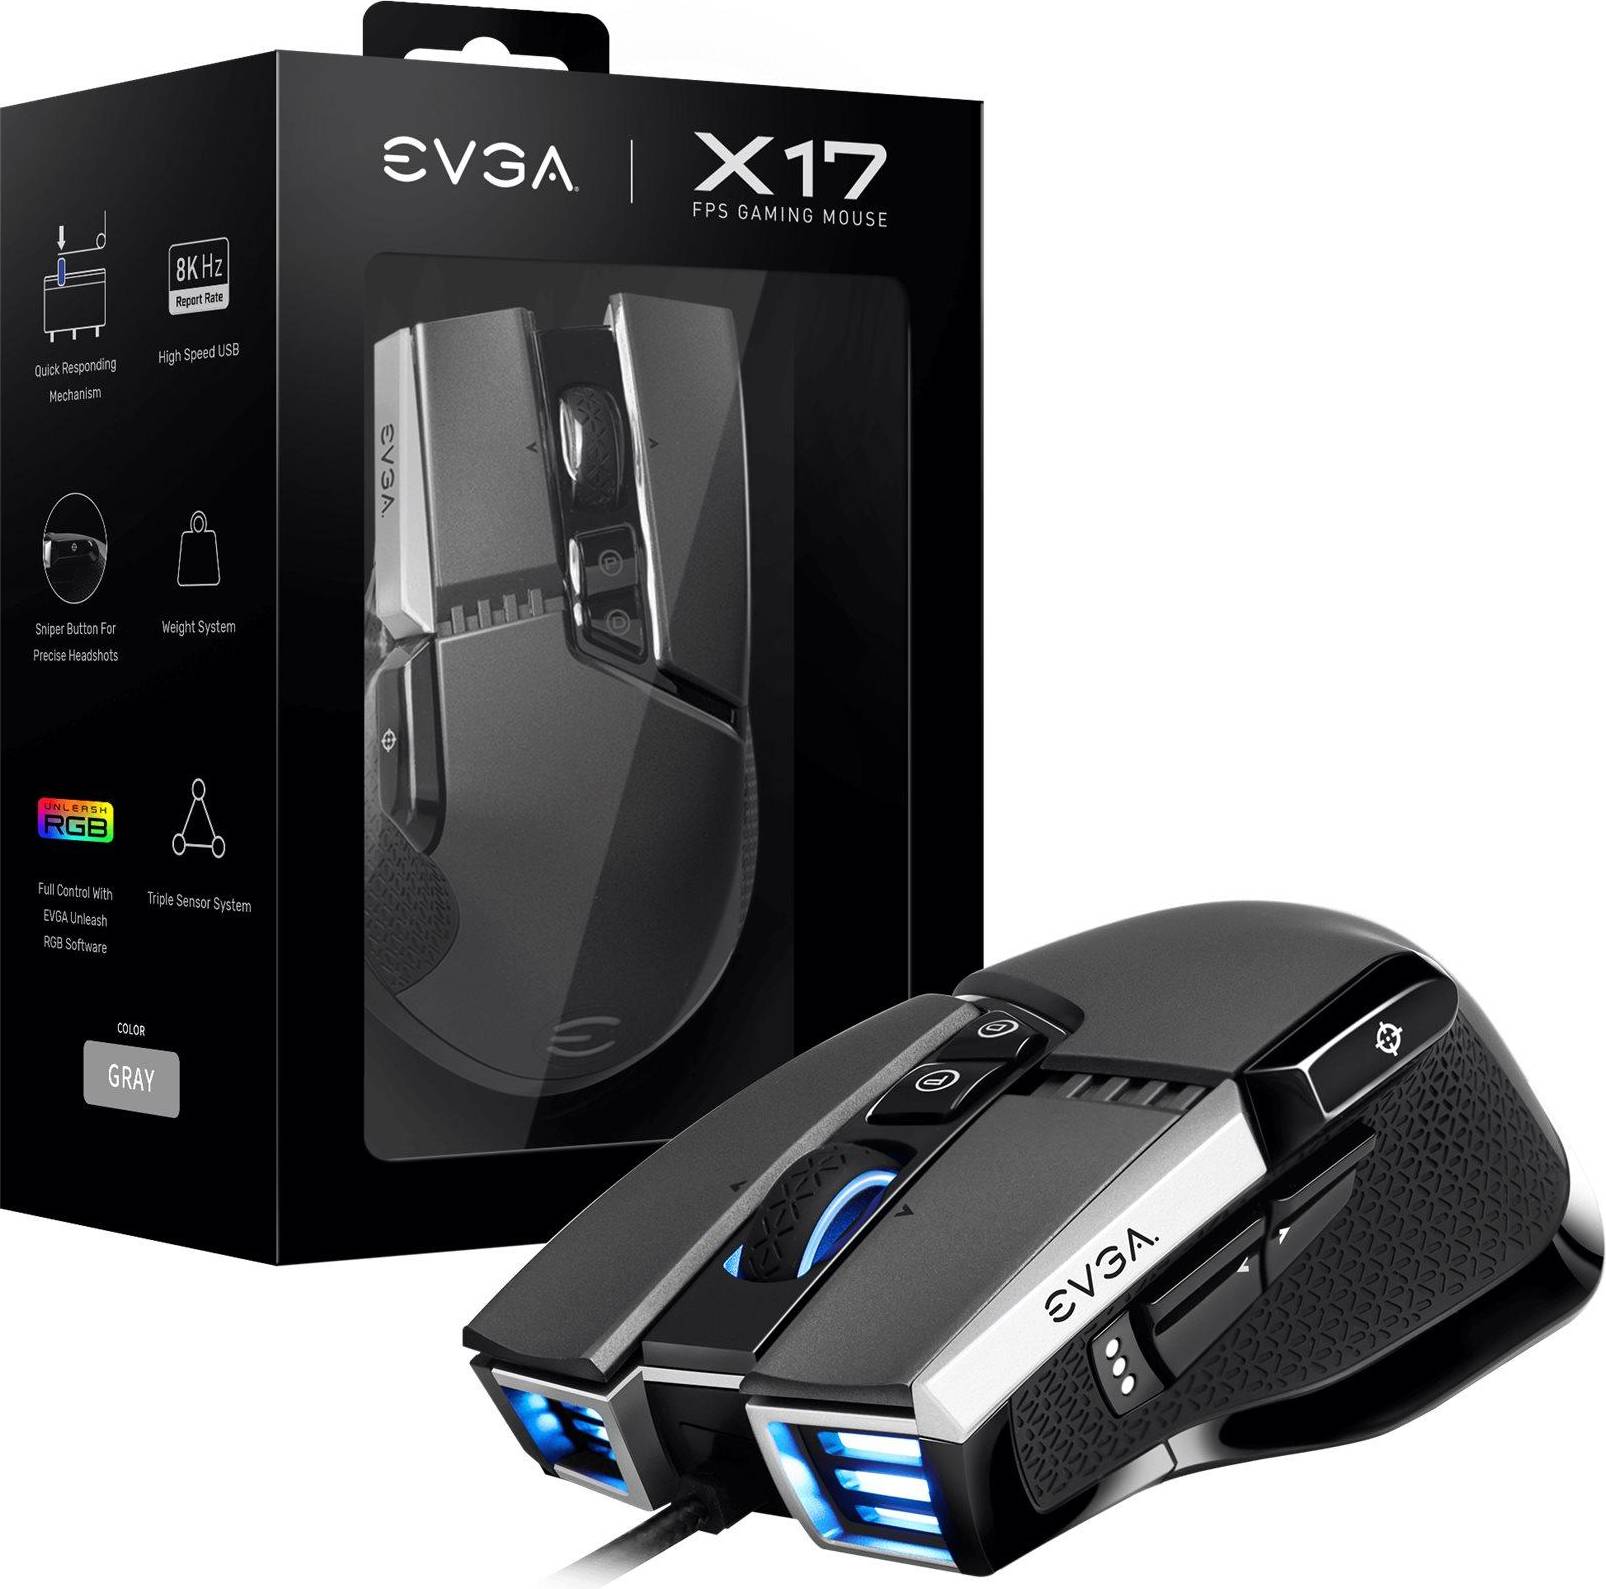  Bild på EVGA X17 gaming mus